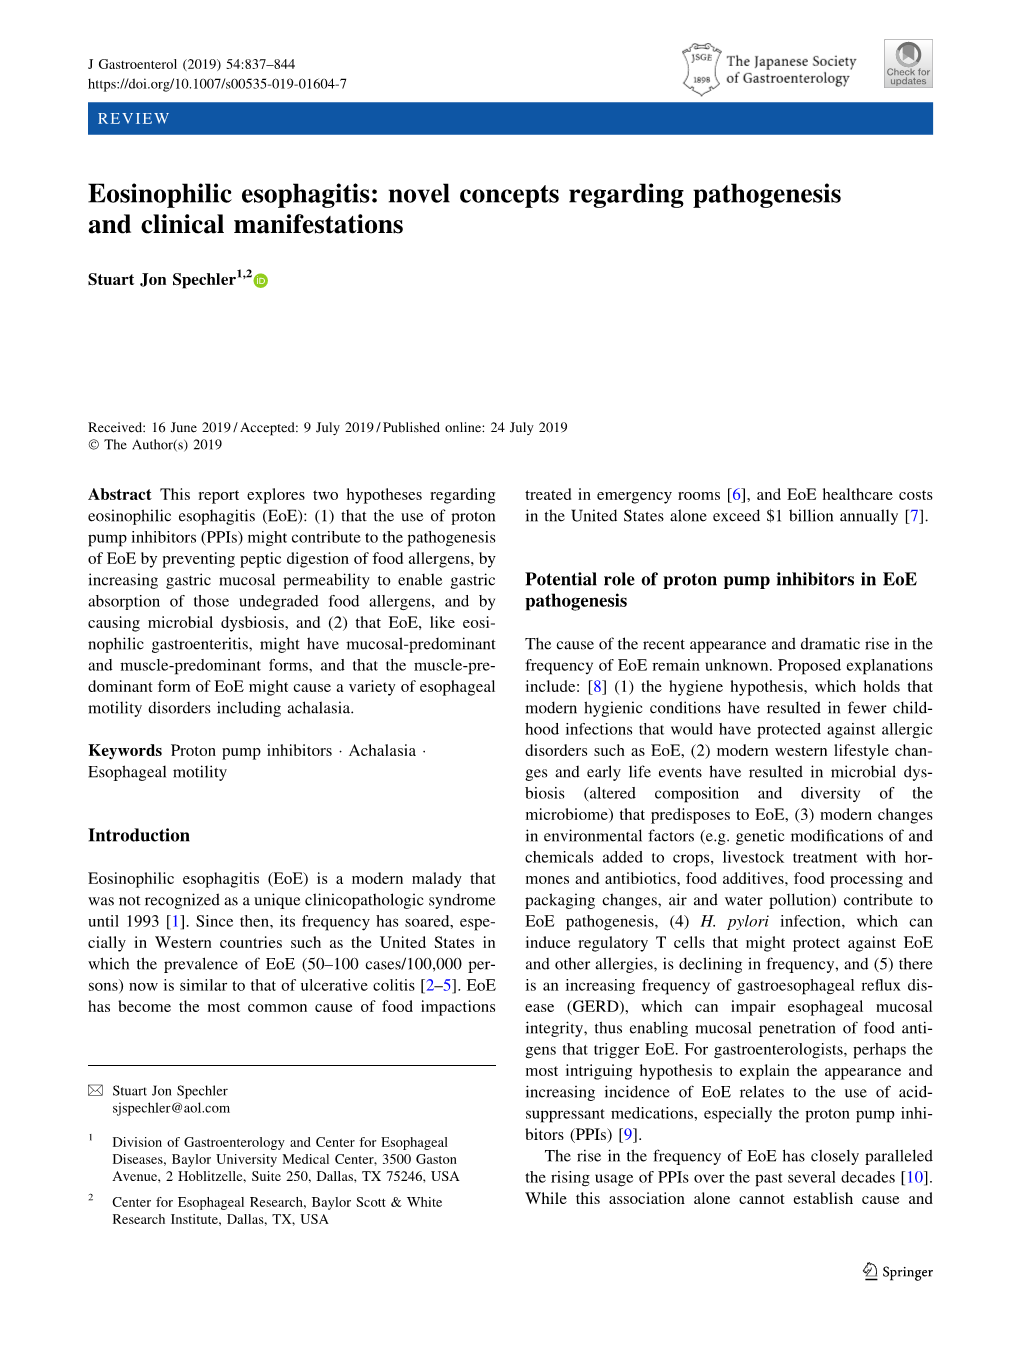 Eosinophilic Esophagitis: Novel Concepts Regarding Pathogenesis and Clinical Manifestations